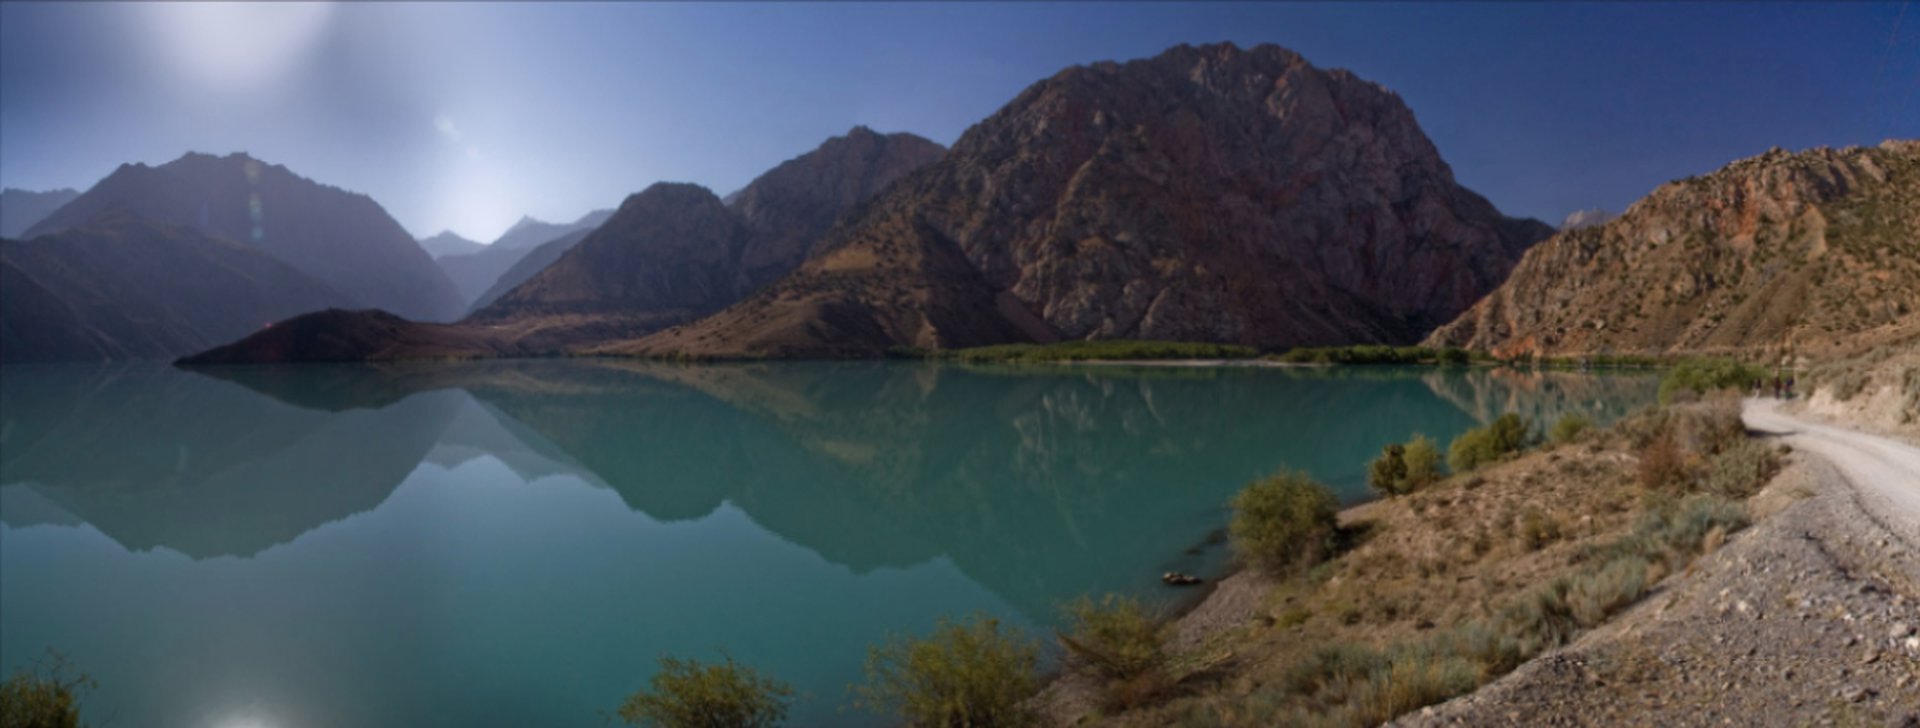 Reiseziele Tadschikistan